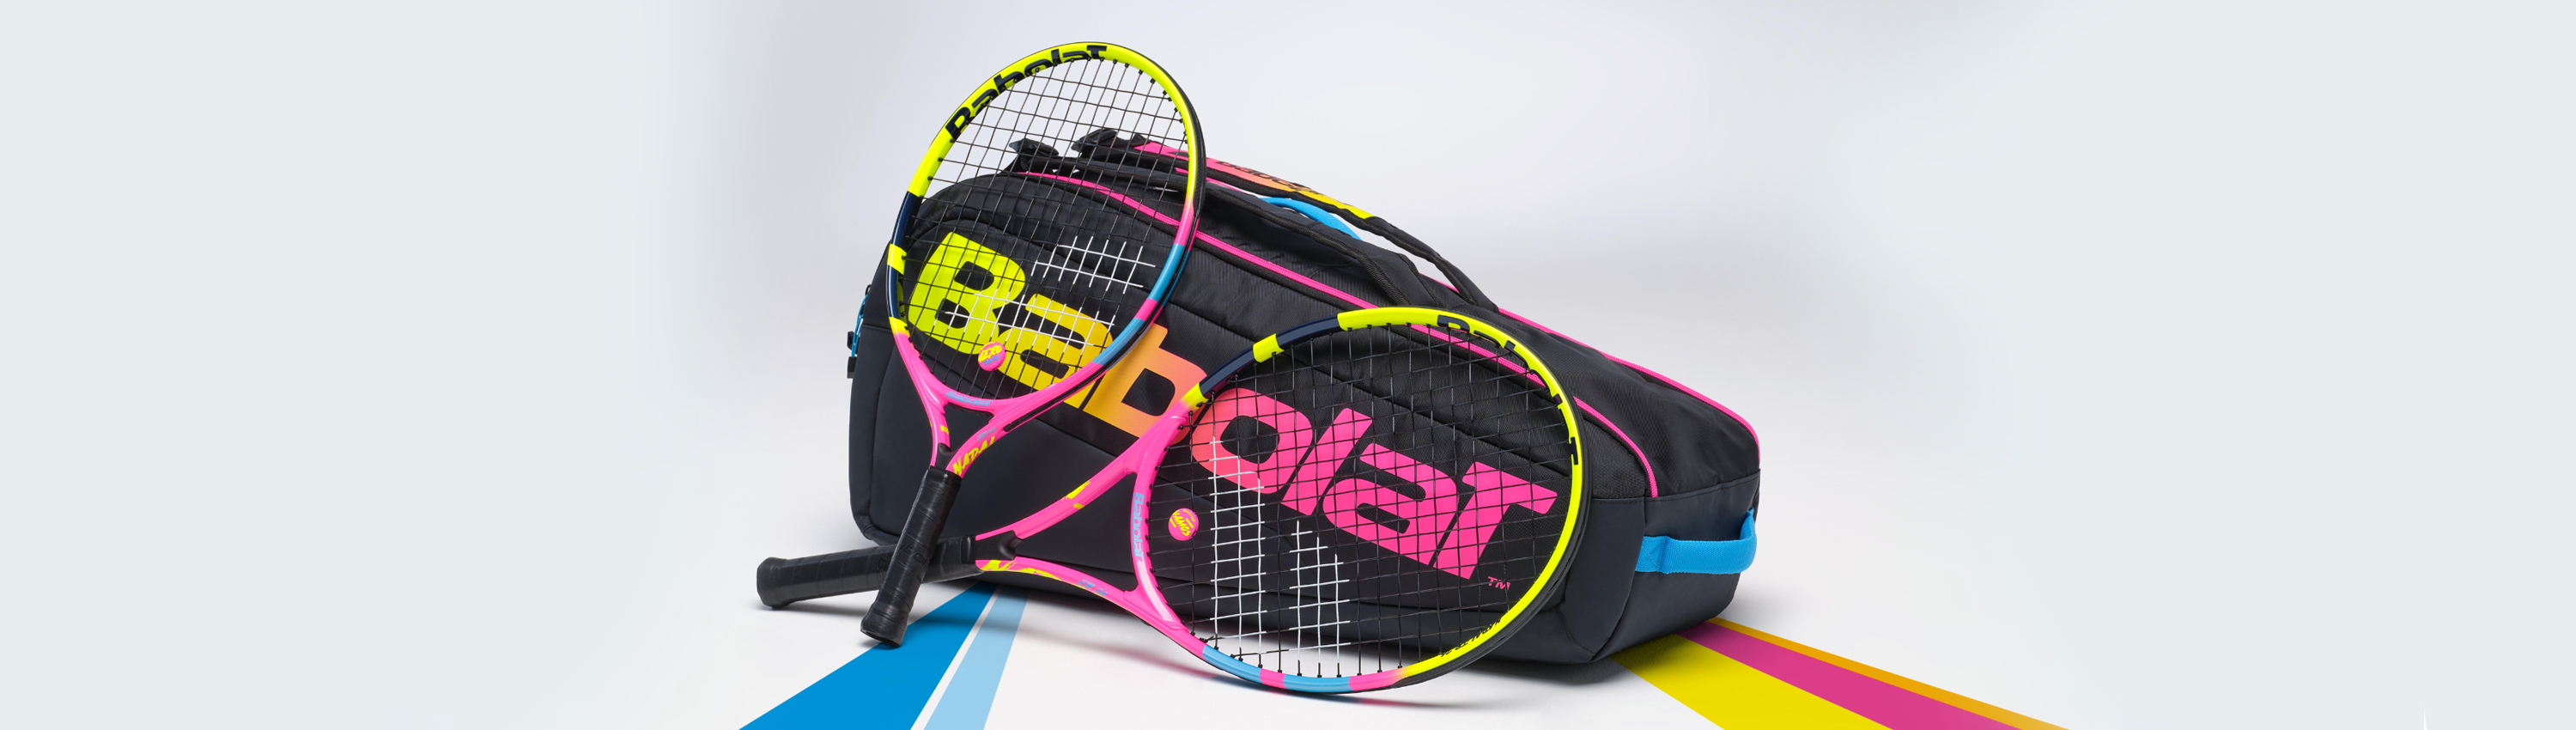 Babolat Junior 2 2019 - raquette badminton